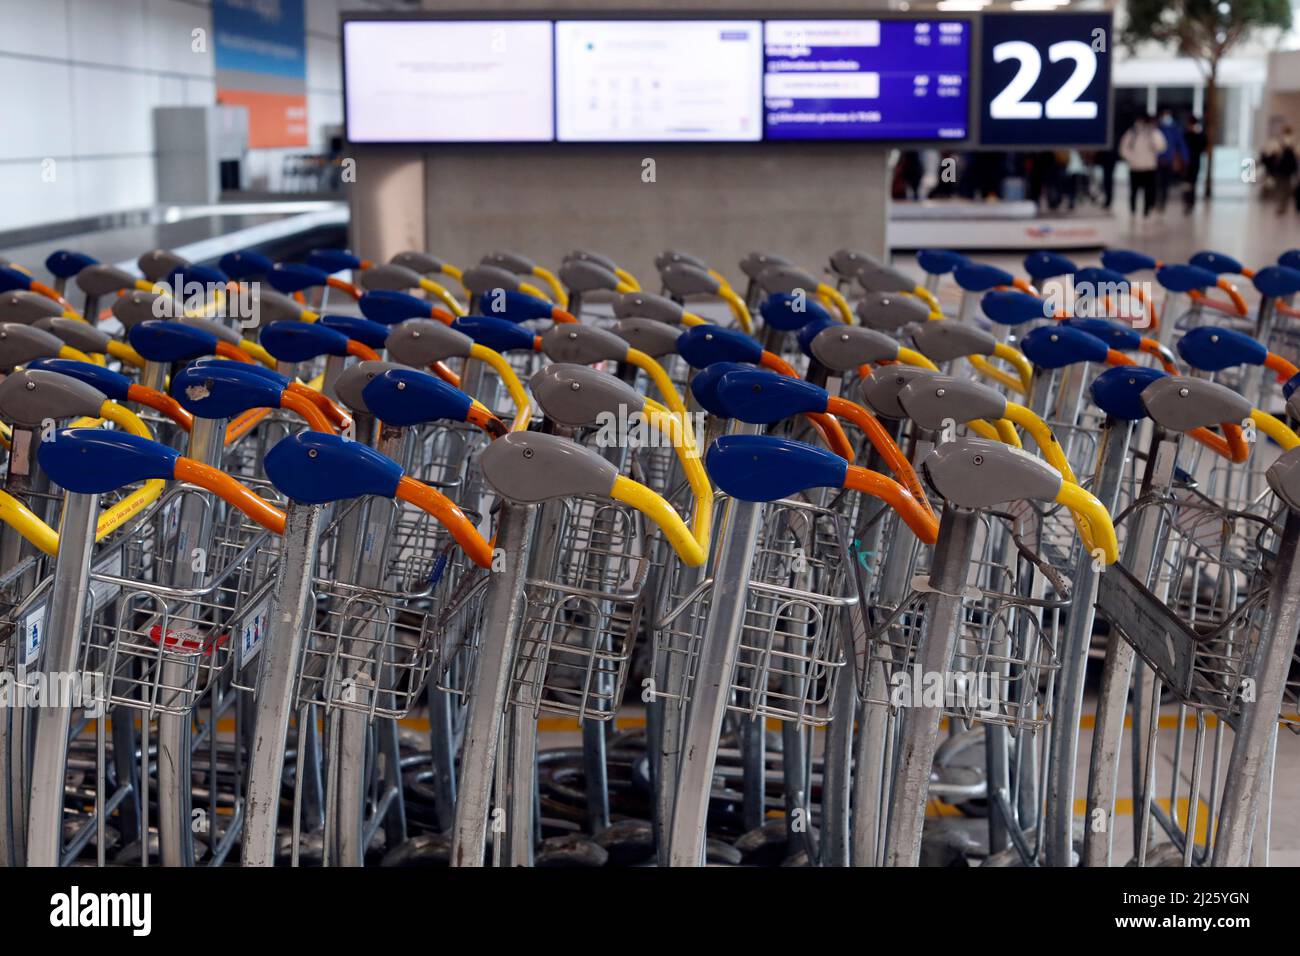 Aéroport Charles de Gaulle. Chariots à bagages dans la zone des arrivées. Banque D'Images